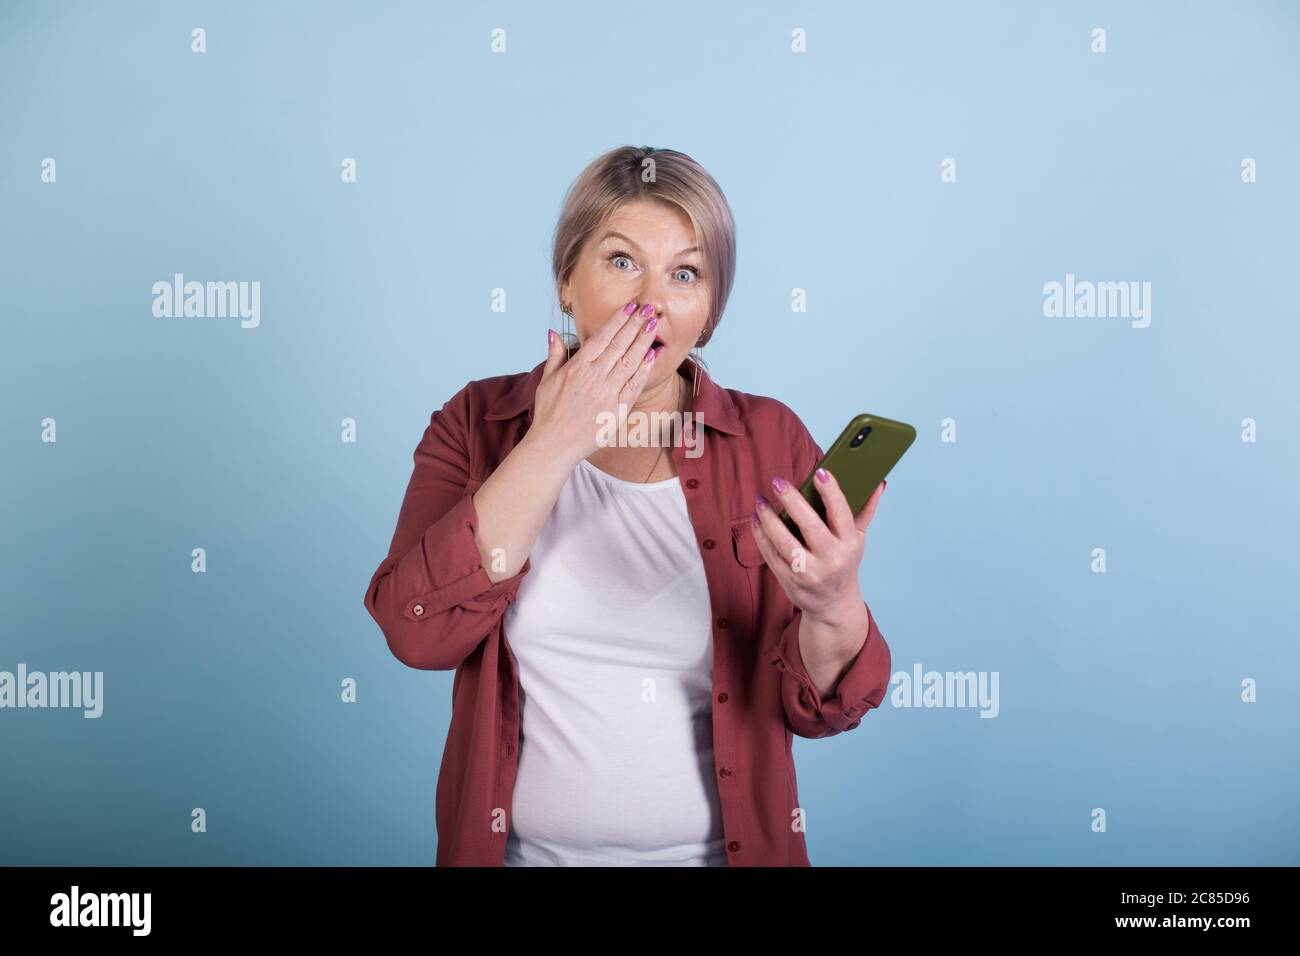 Schockierte kaukasische ältere Frau mit blonden Haaren, die ein Telefon hält und die Kamera an einer blauen Studiowand anschaut Stockfoto